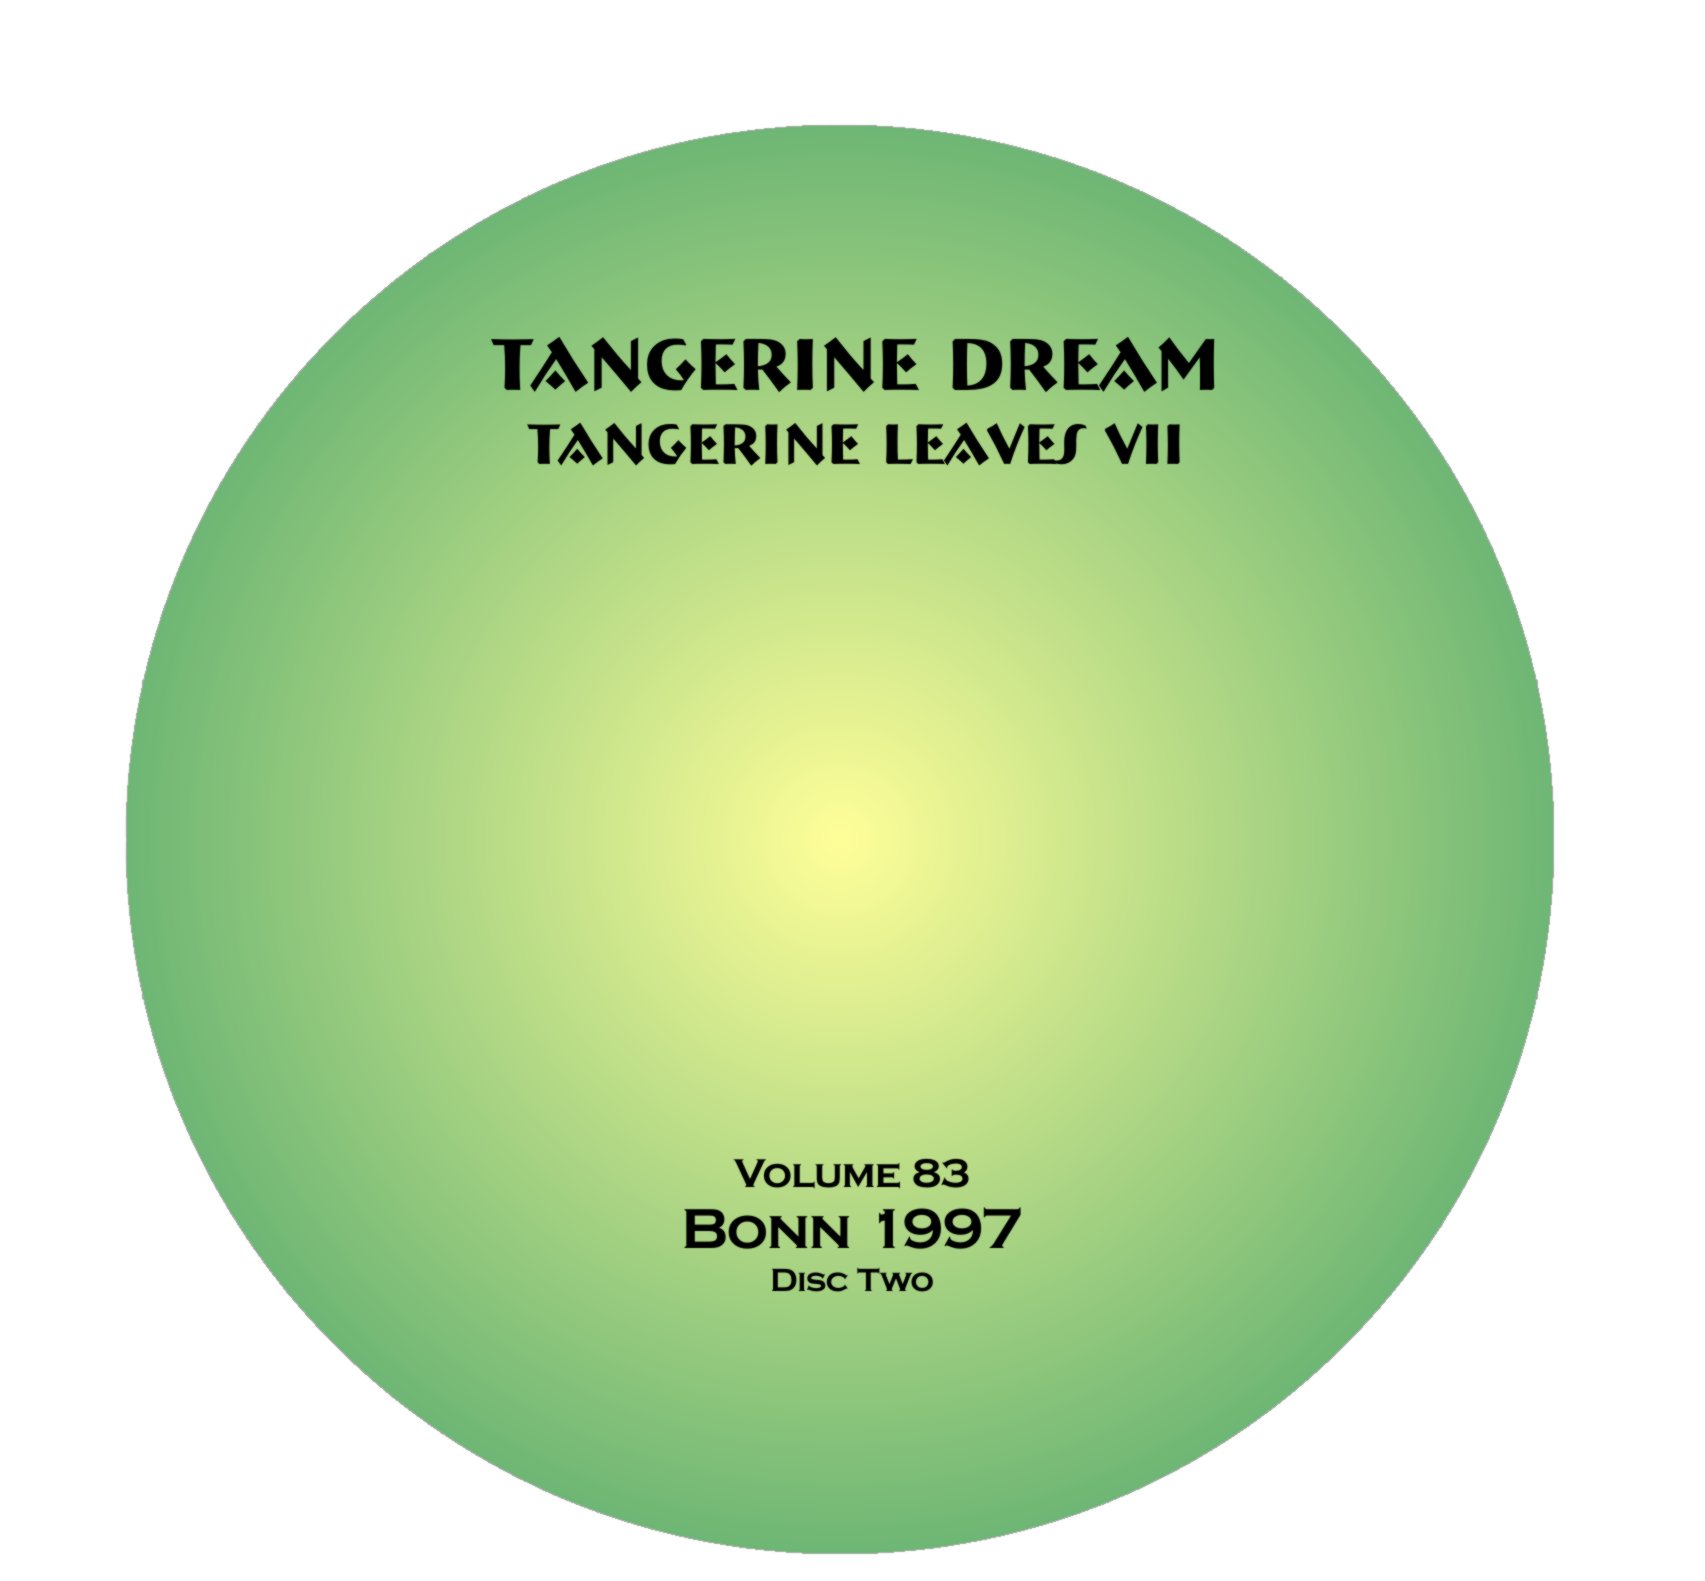 TangerineDream1997-04-11BeethovenhalleBonnGermany (3).jpg